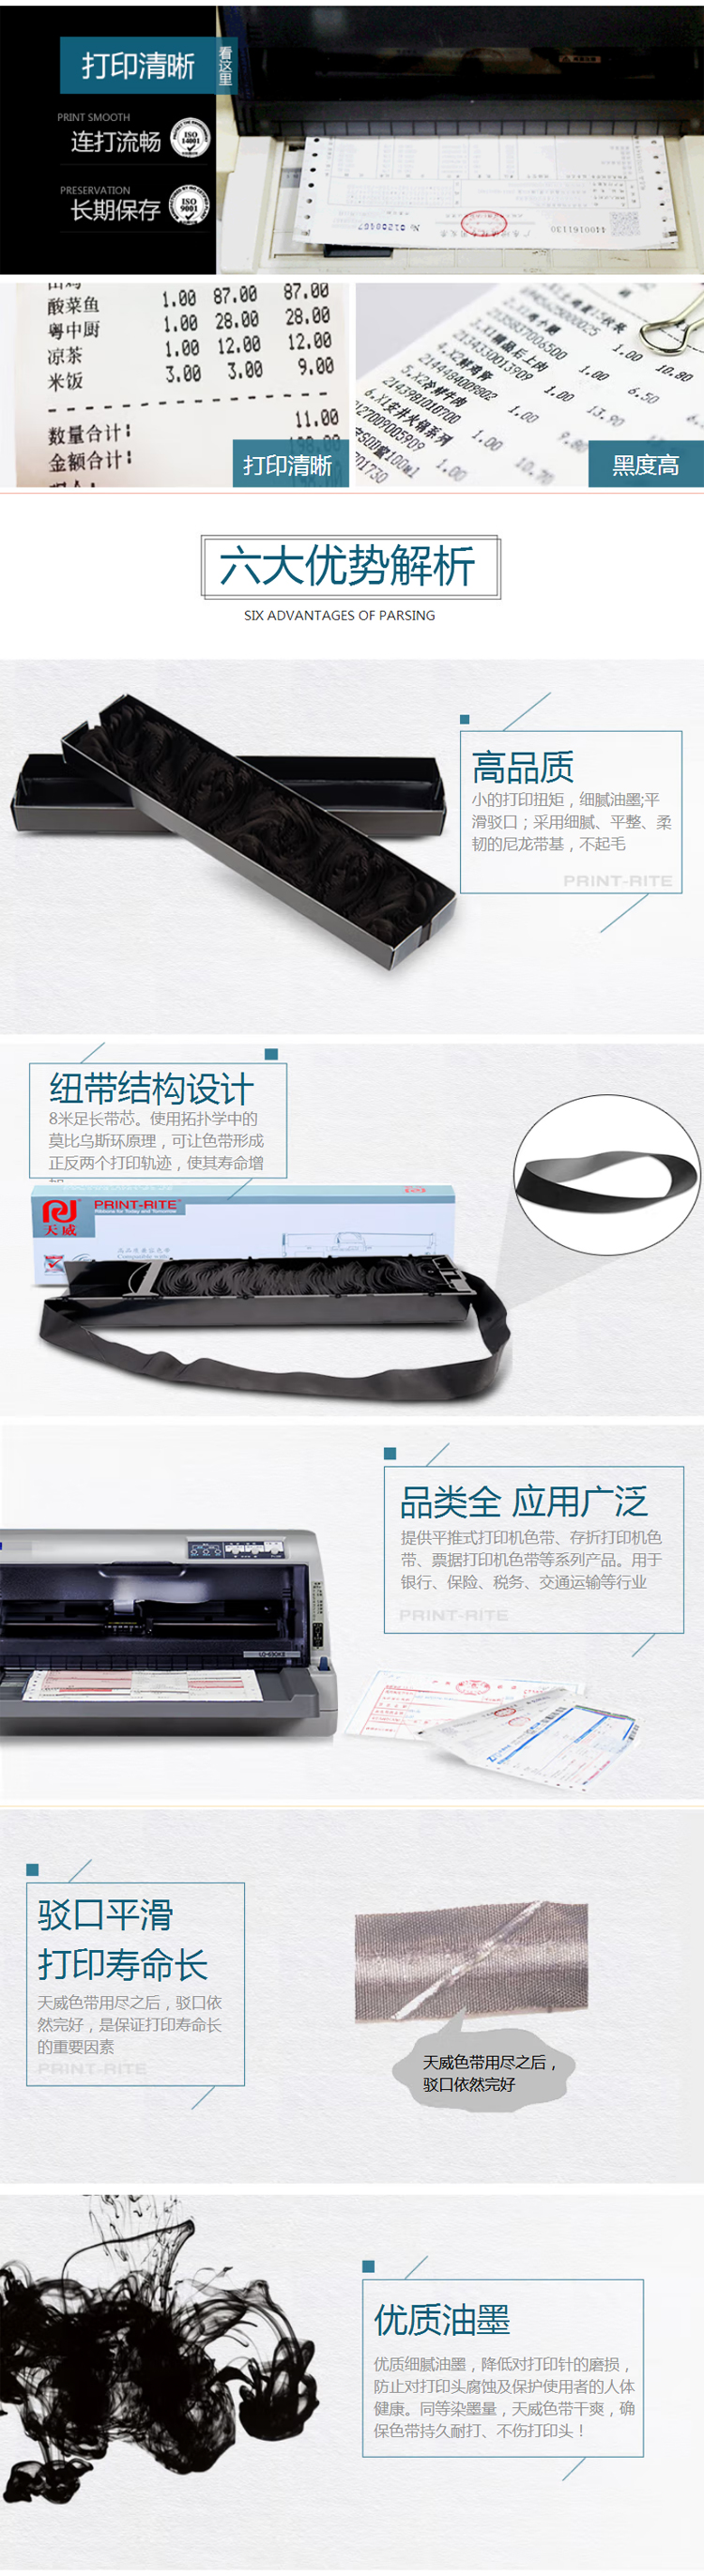 【天威DS200】天威-DS200色带芯-适用得实DS200-7830-7860打印机-14m,7m_02.jpg